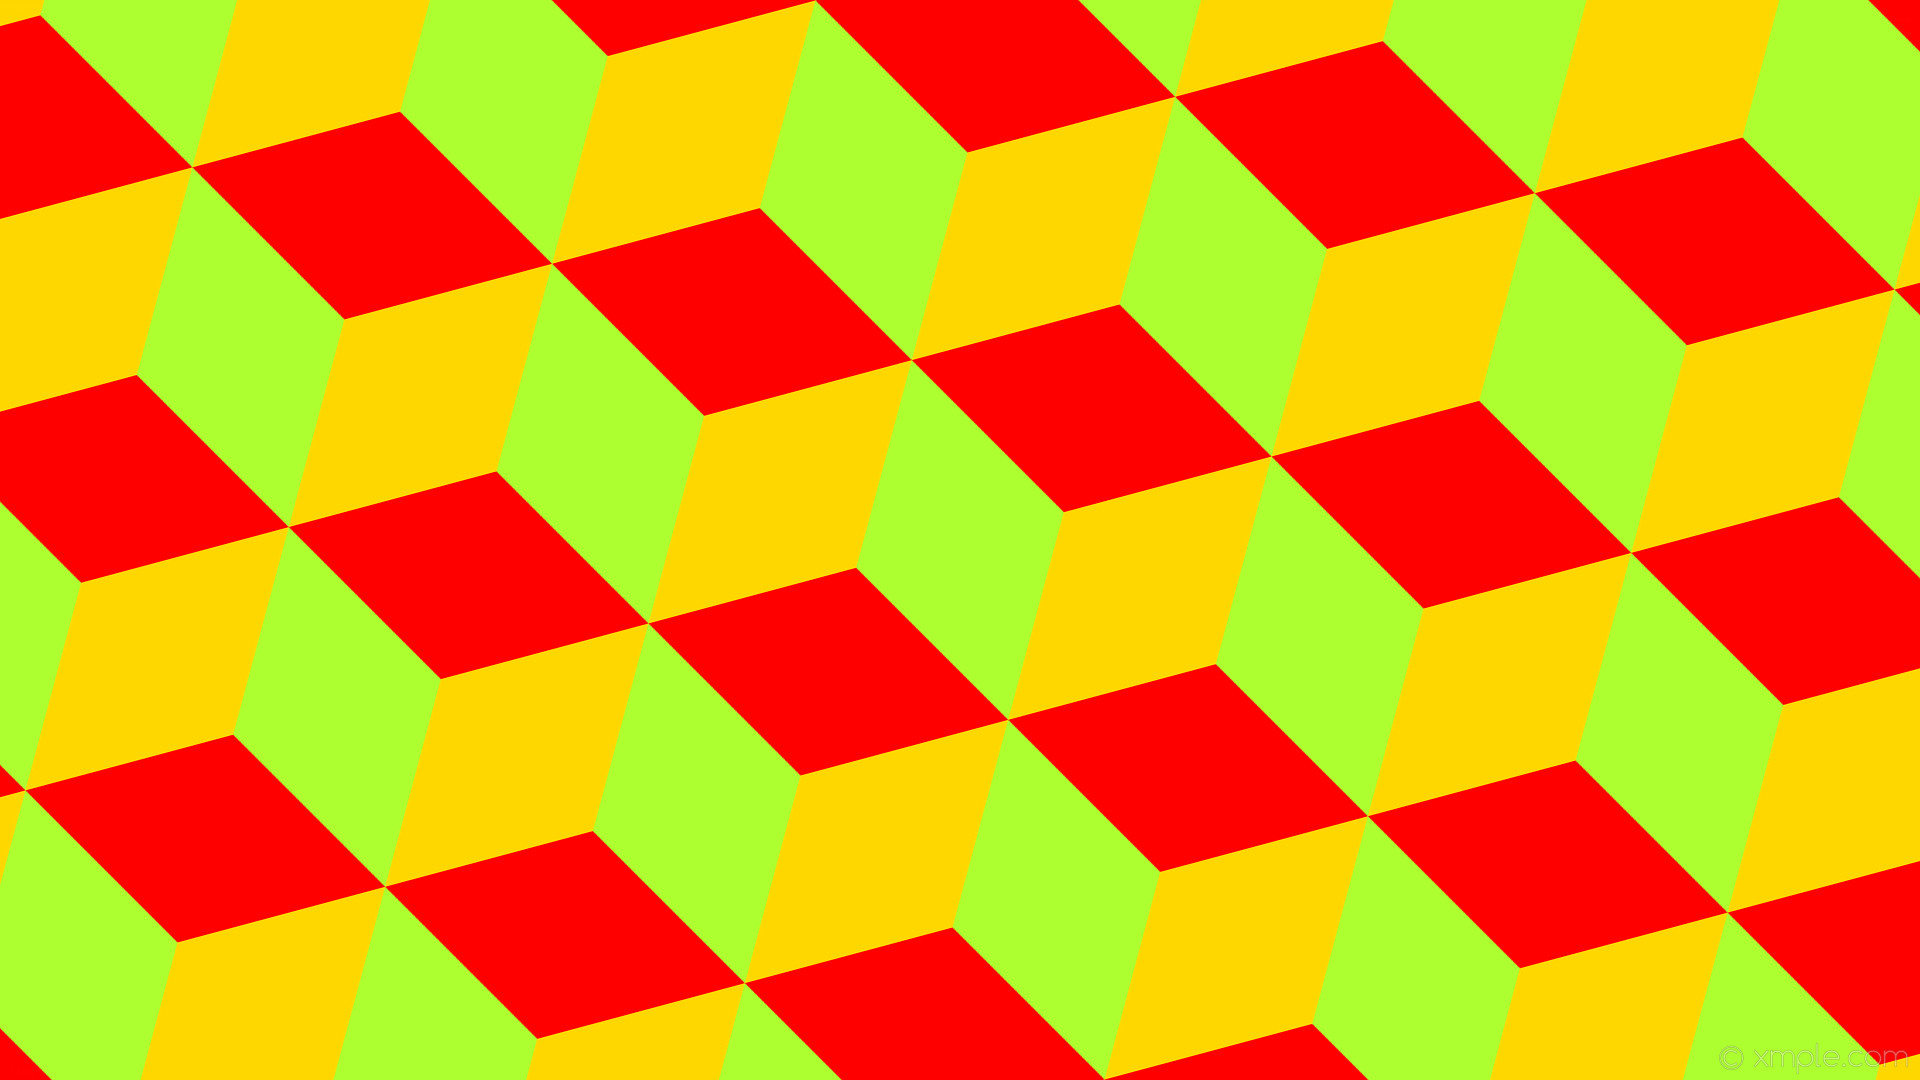 1920x1080 wallpaper green yellow 3d cubes red green yellow gold #adff2f #ffd700  #ff0000 105